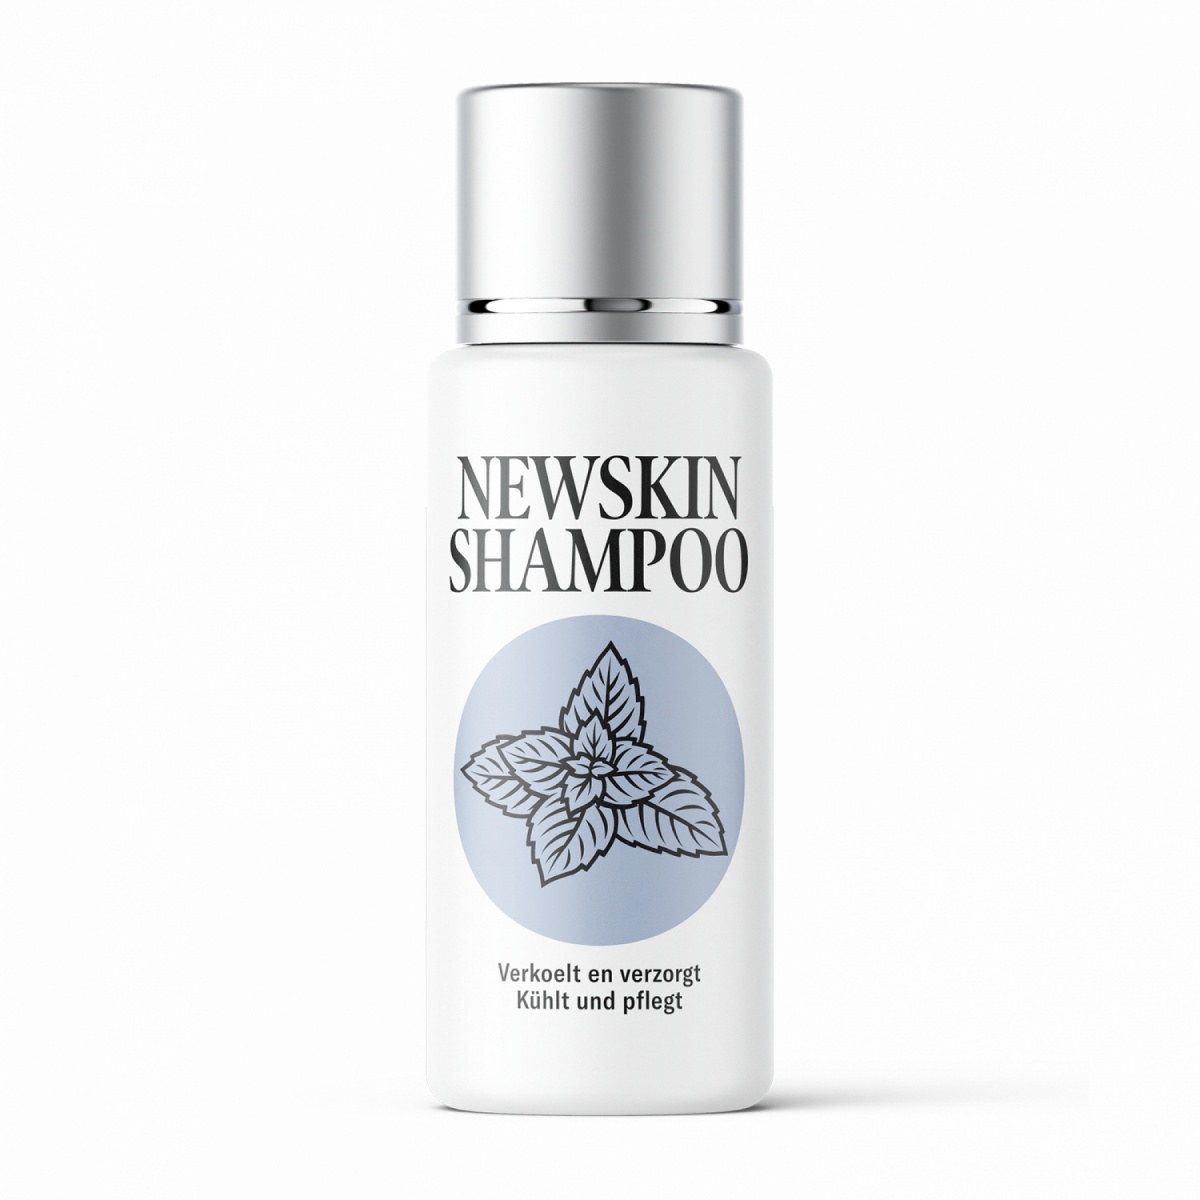 Newskin Shampoo - 200 ml.